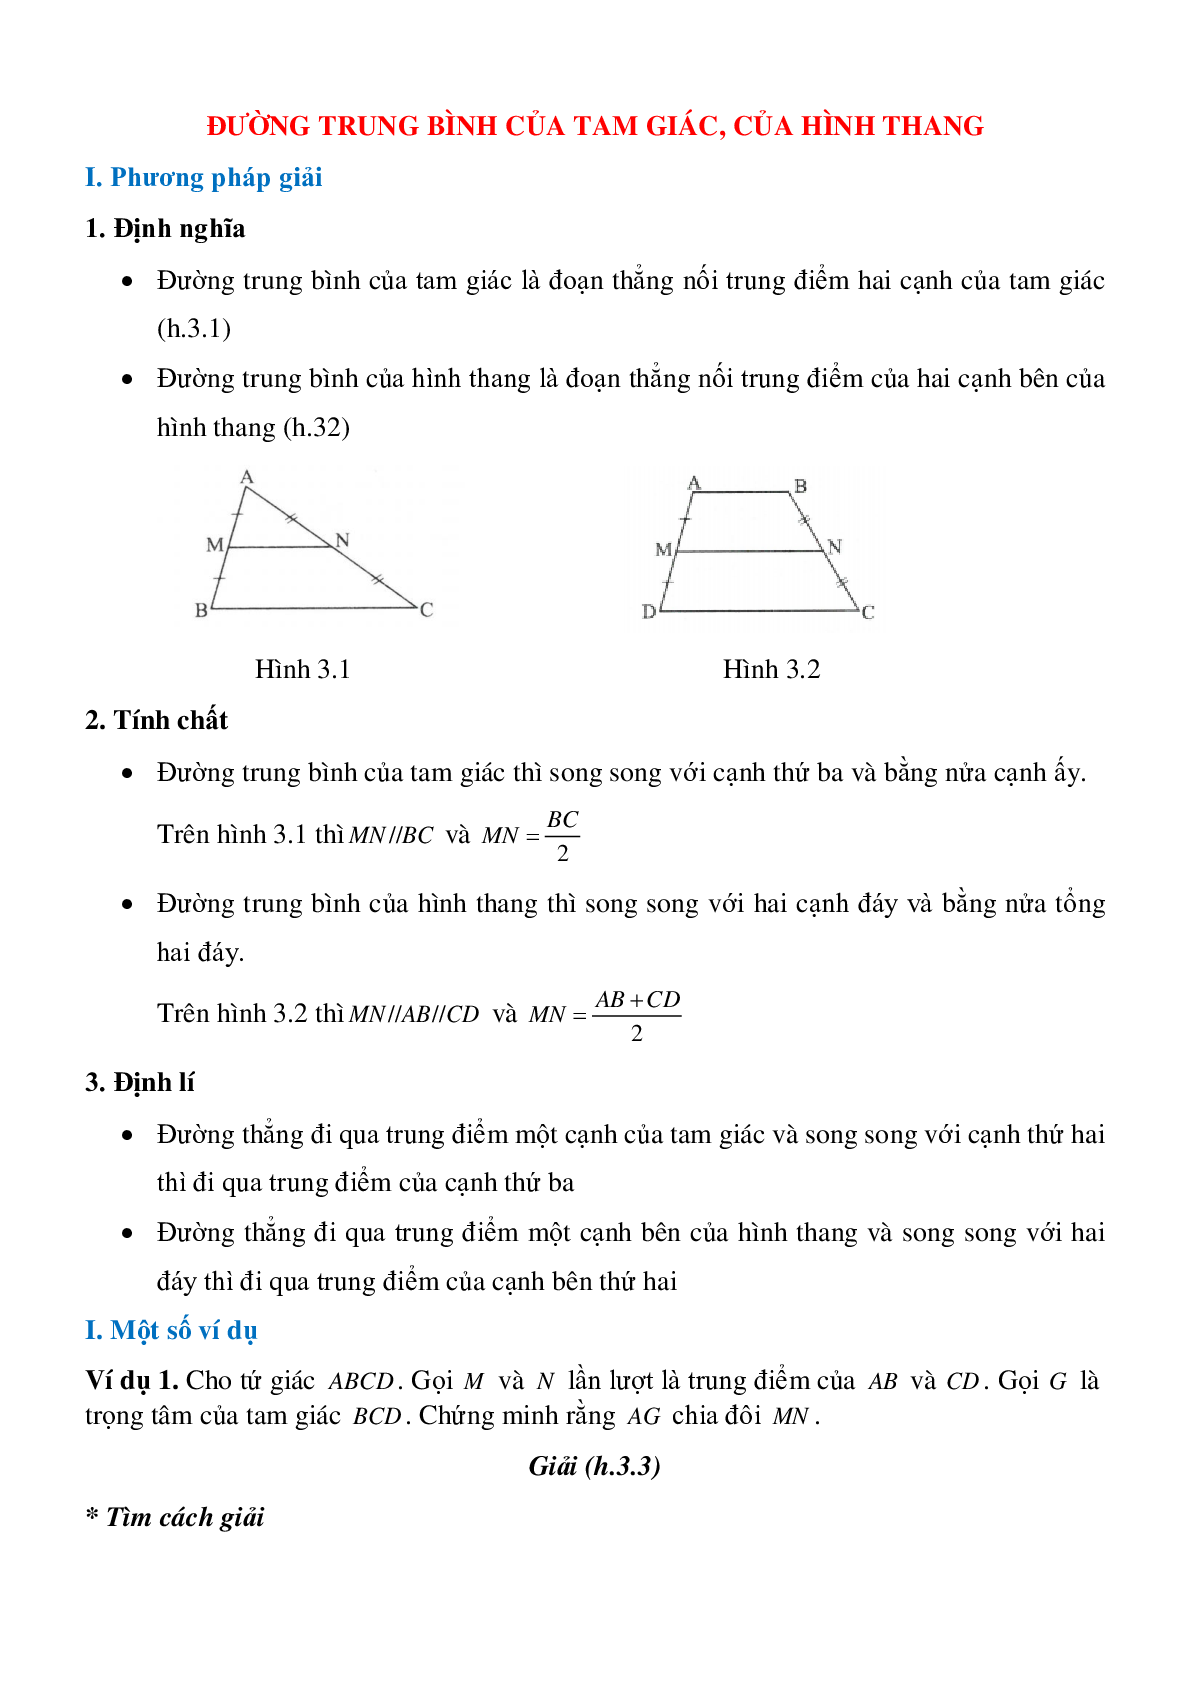 Đường trung bình của tam giác, của hình thang (trang 1)